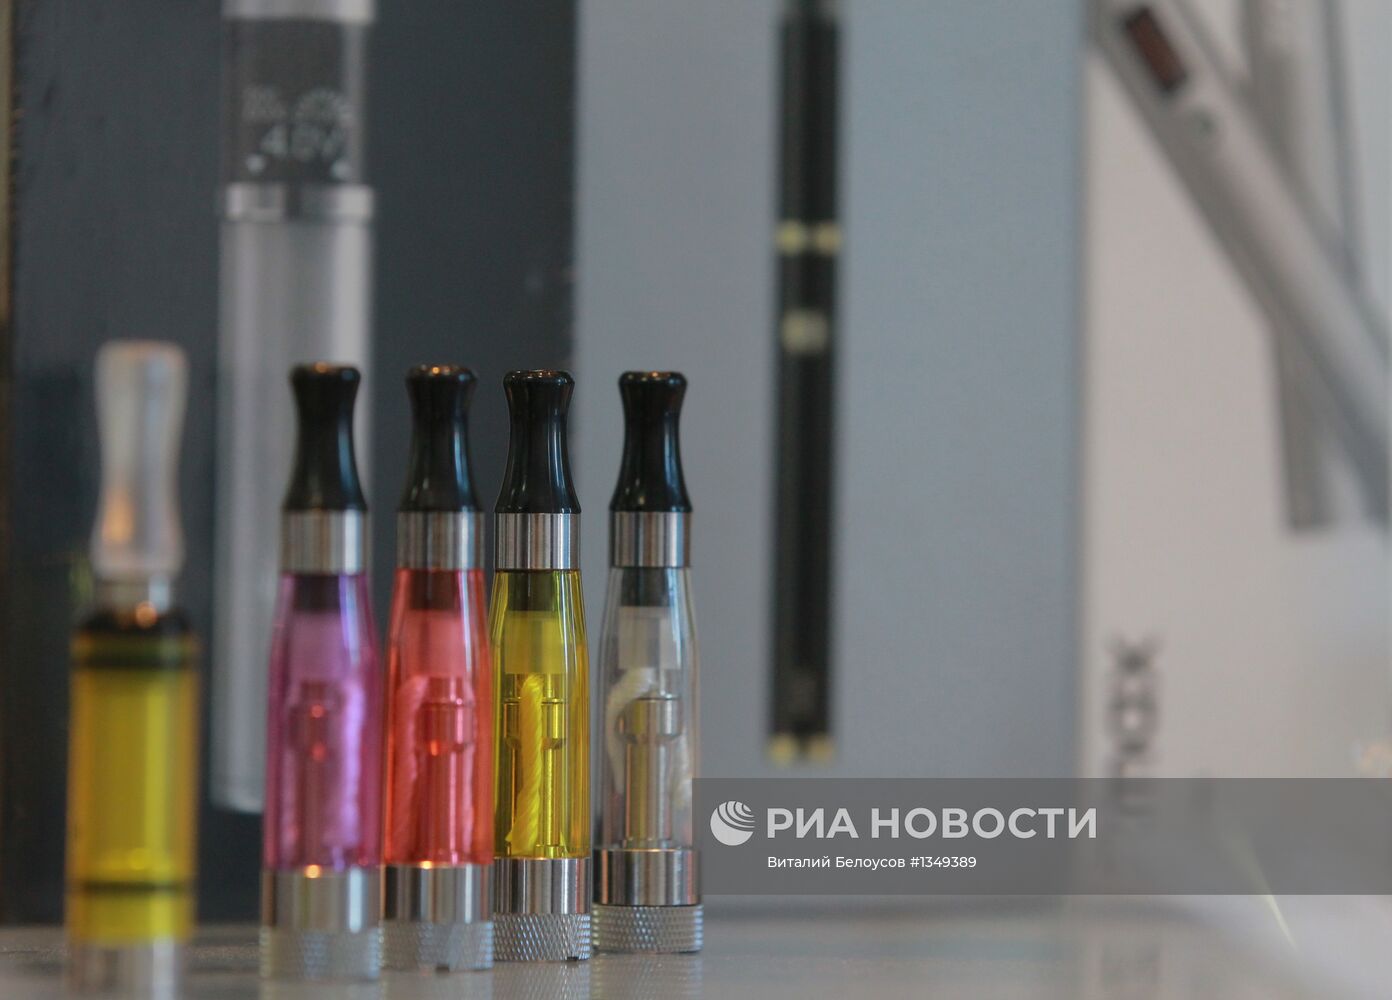 Продажа электронных сигарет в Москве